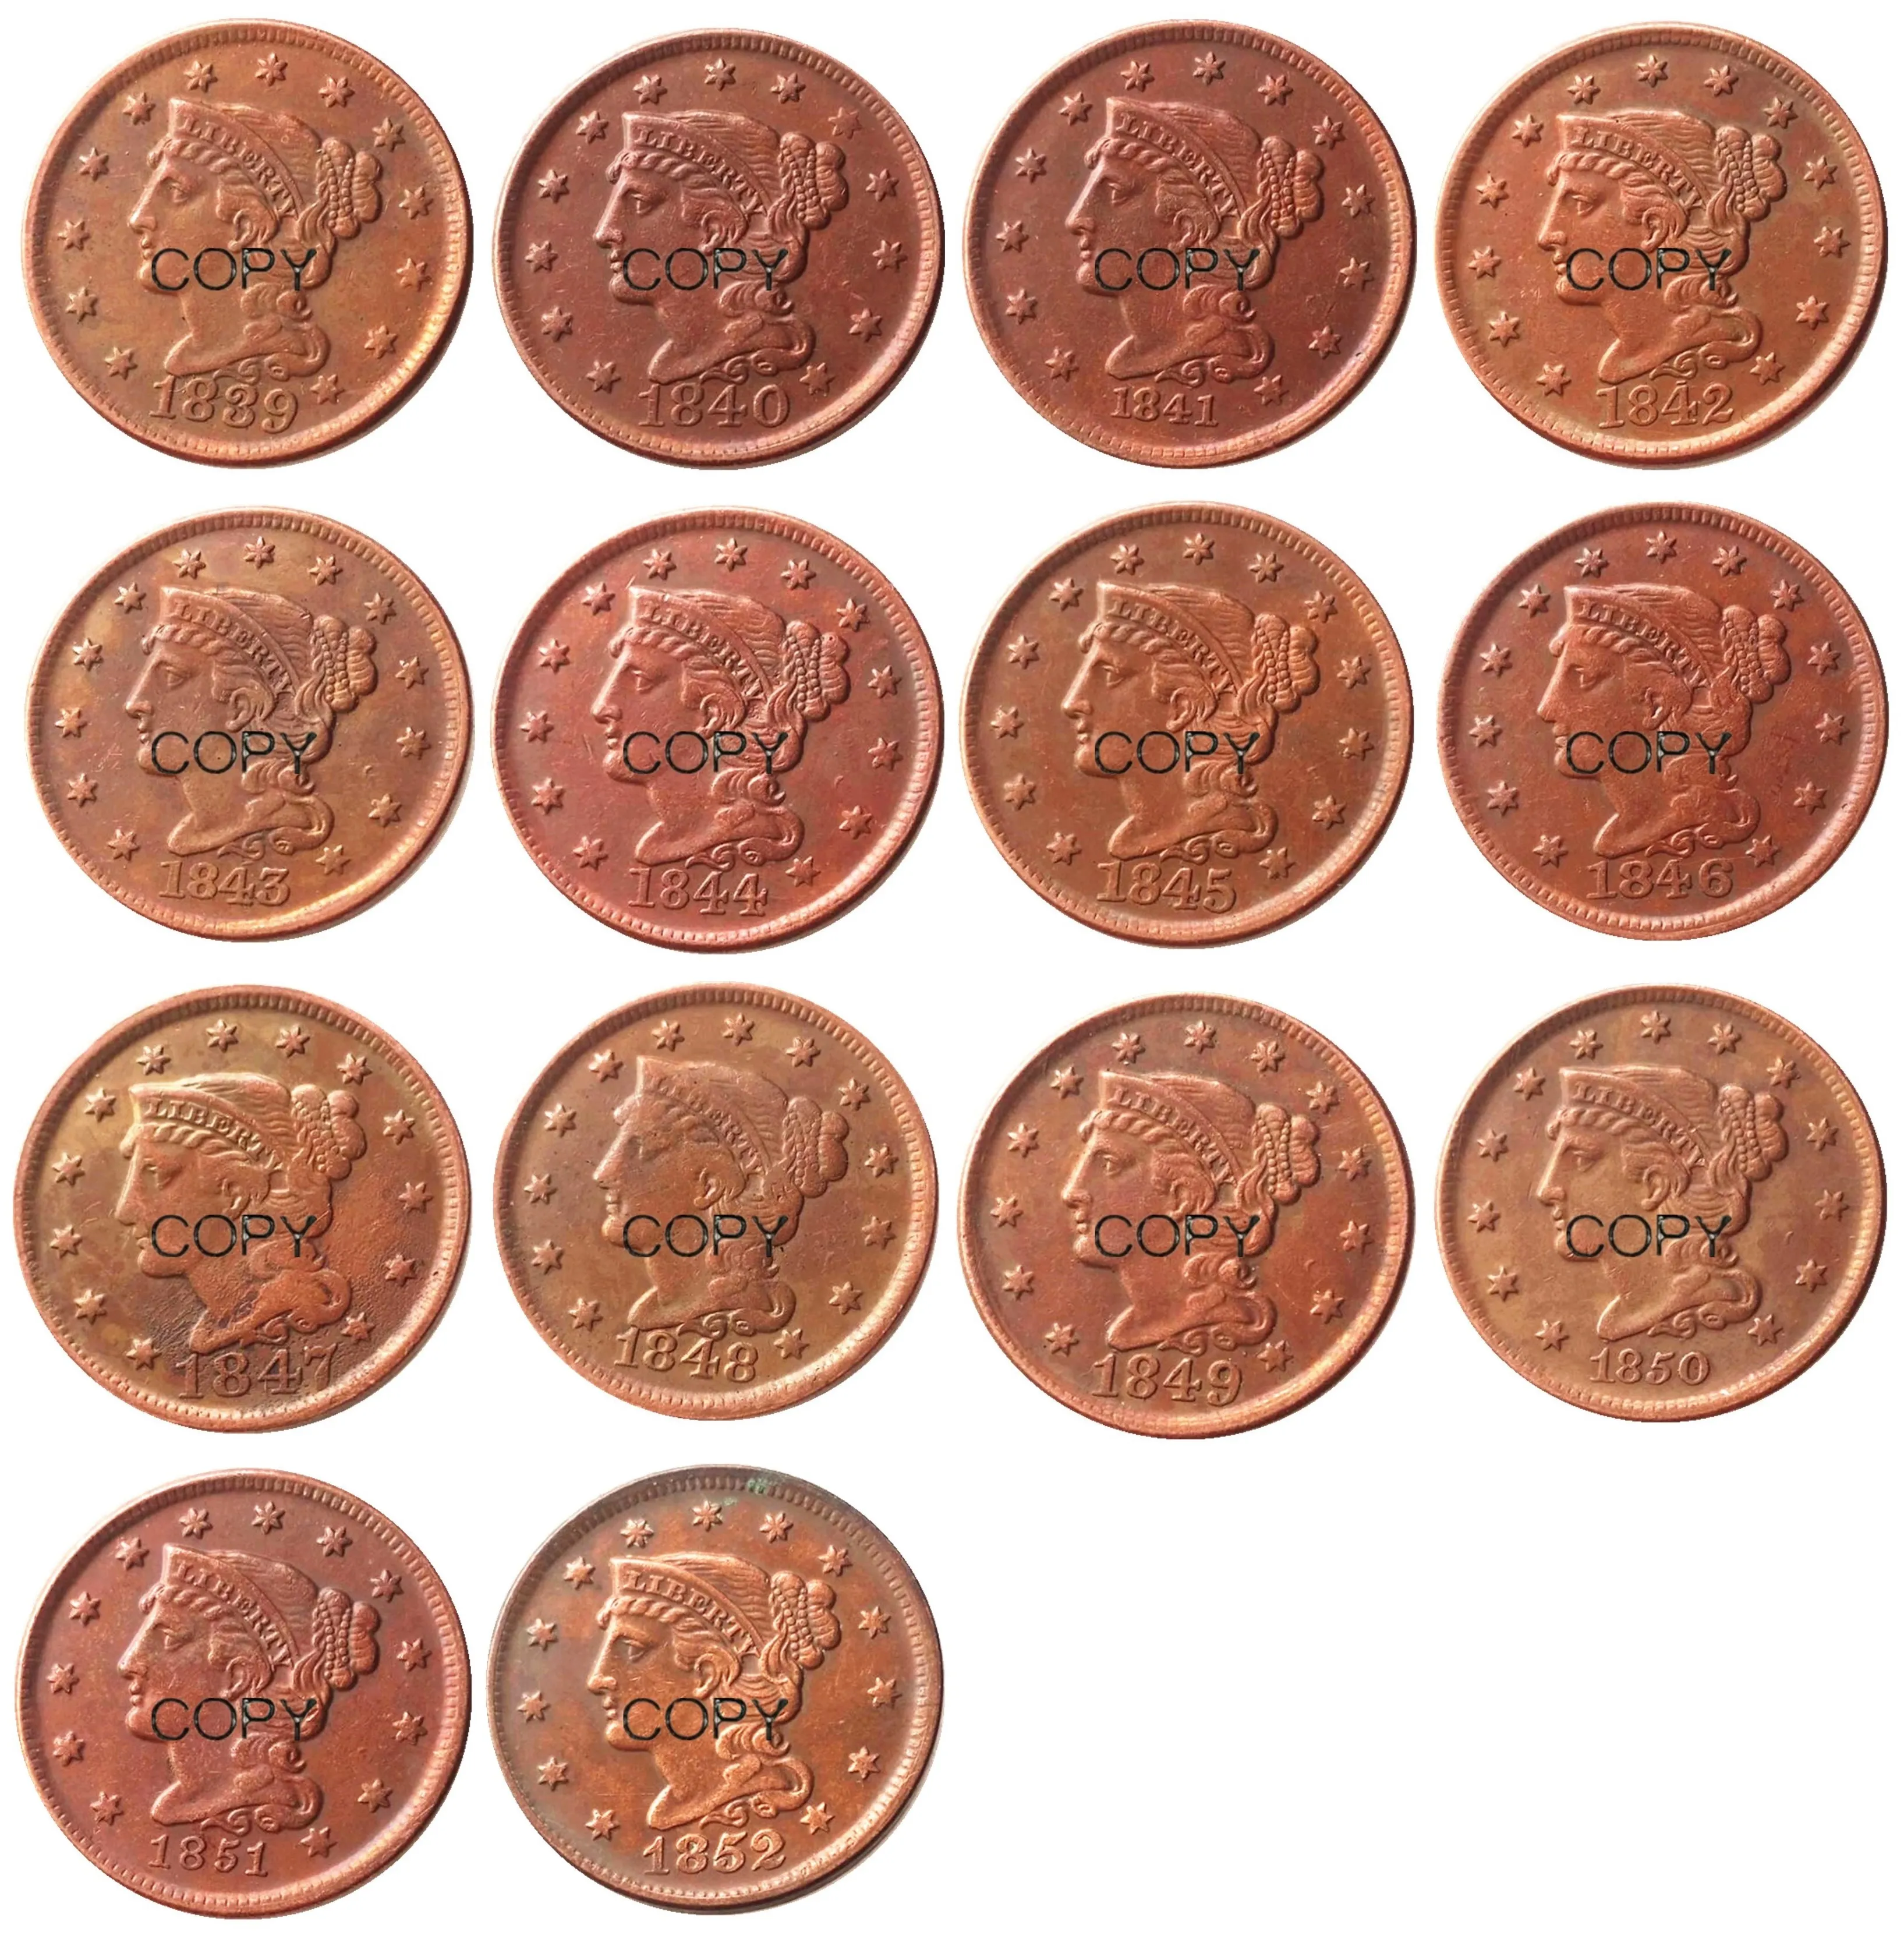 US -Münzen Full Set 18391852 verschiedene Daten für ausgewähltes geflochtenes Haar Large Cent 100 Kupfer Kopiermünzen2549847